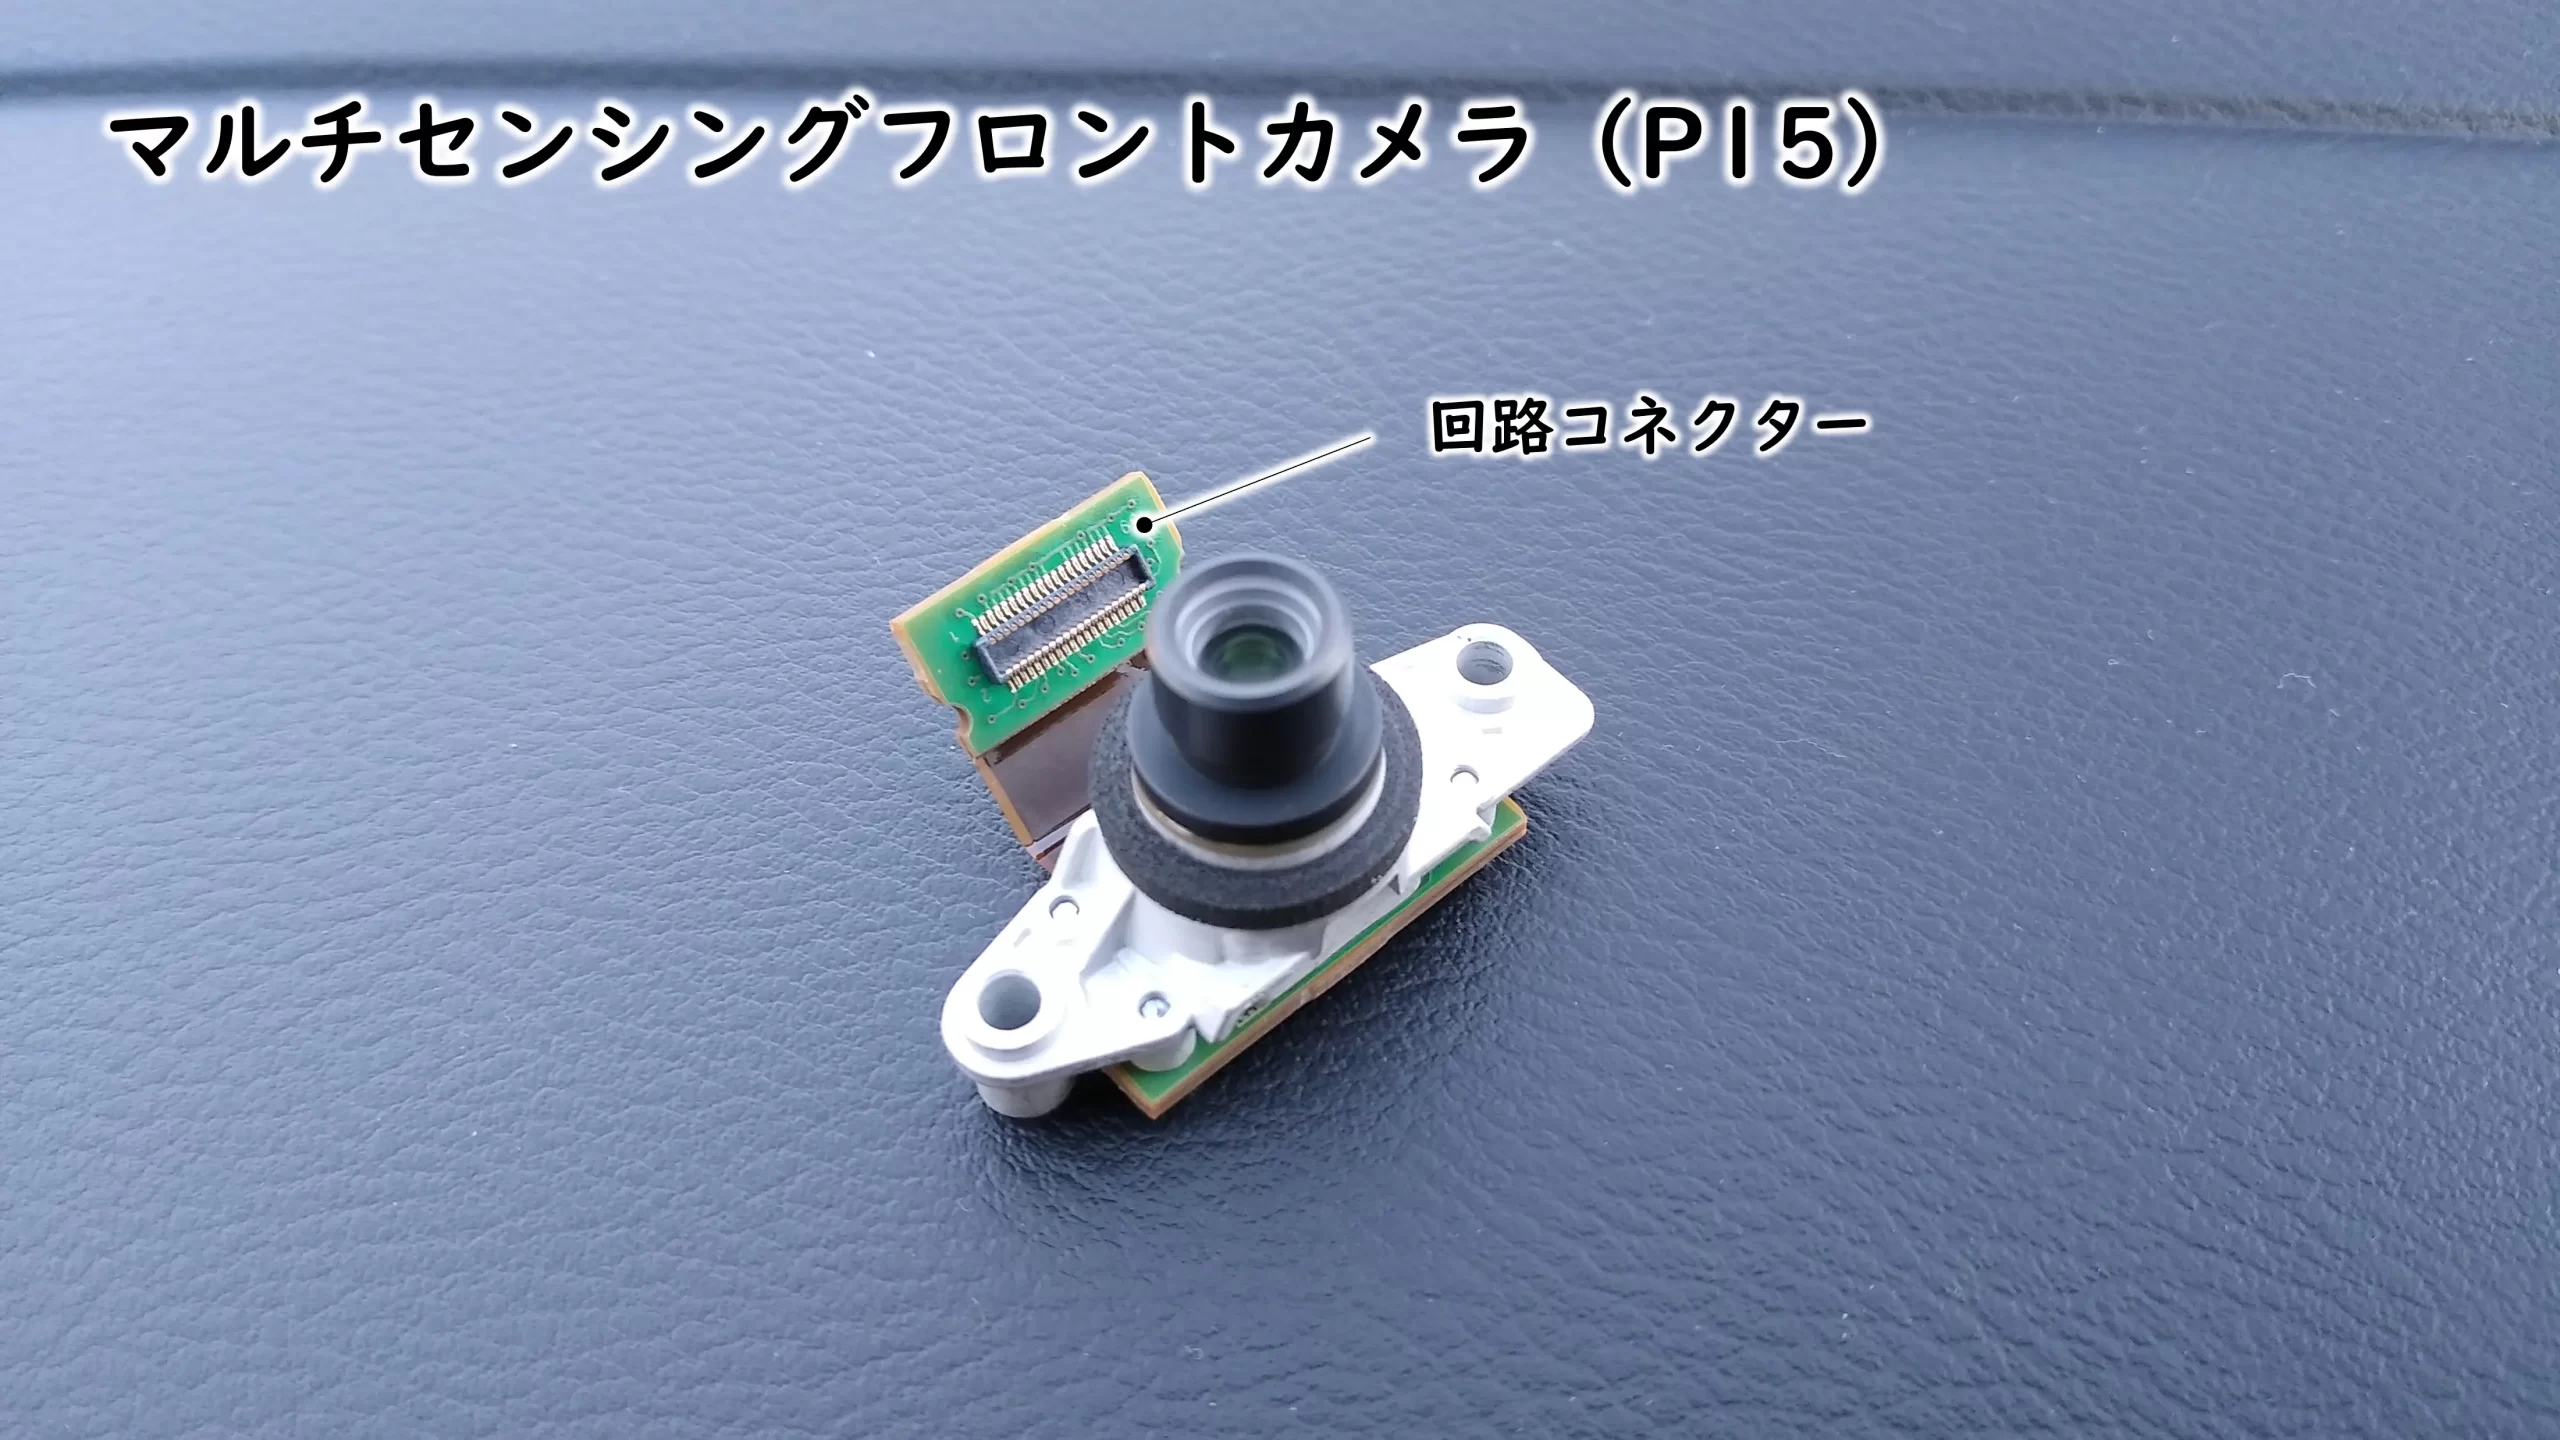 日産キックスe-POWERのマルチセンシングフロントカメラ